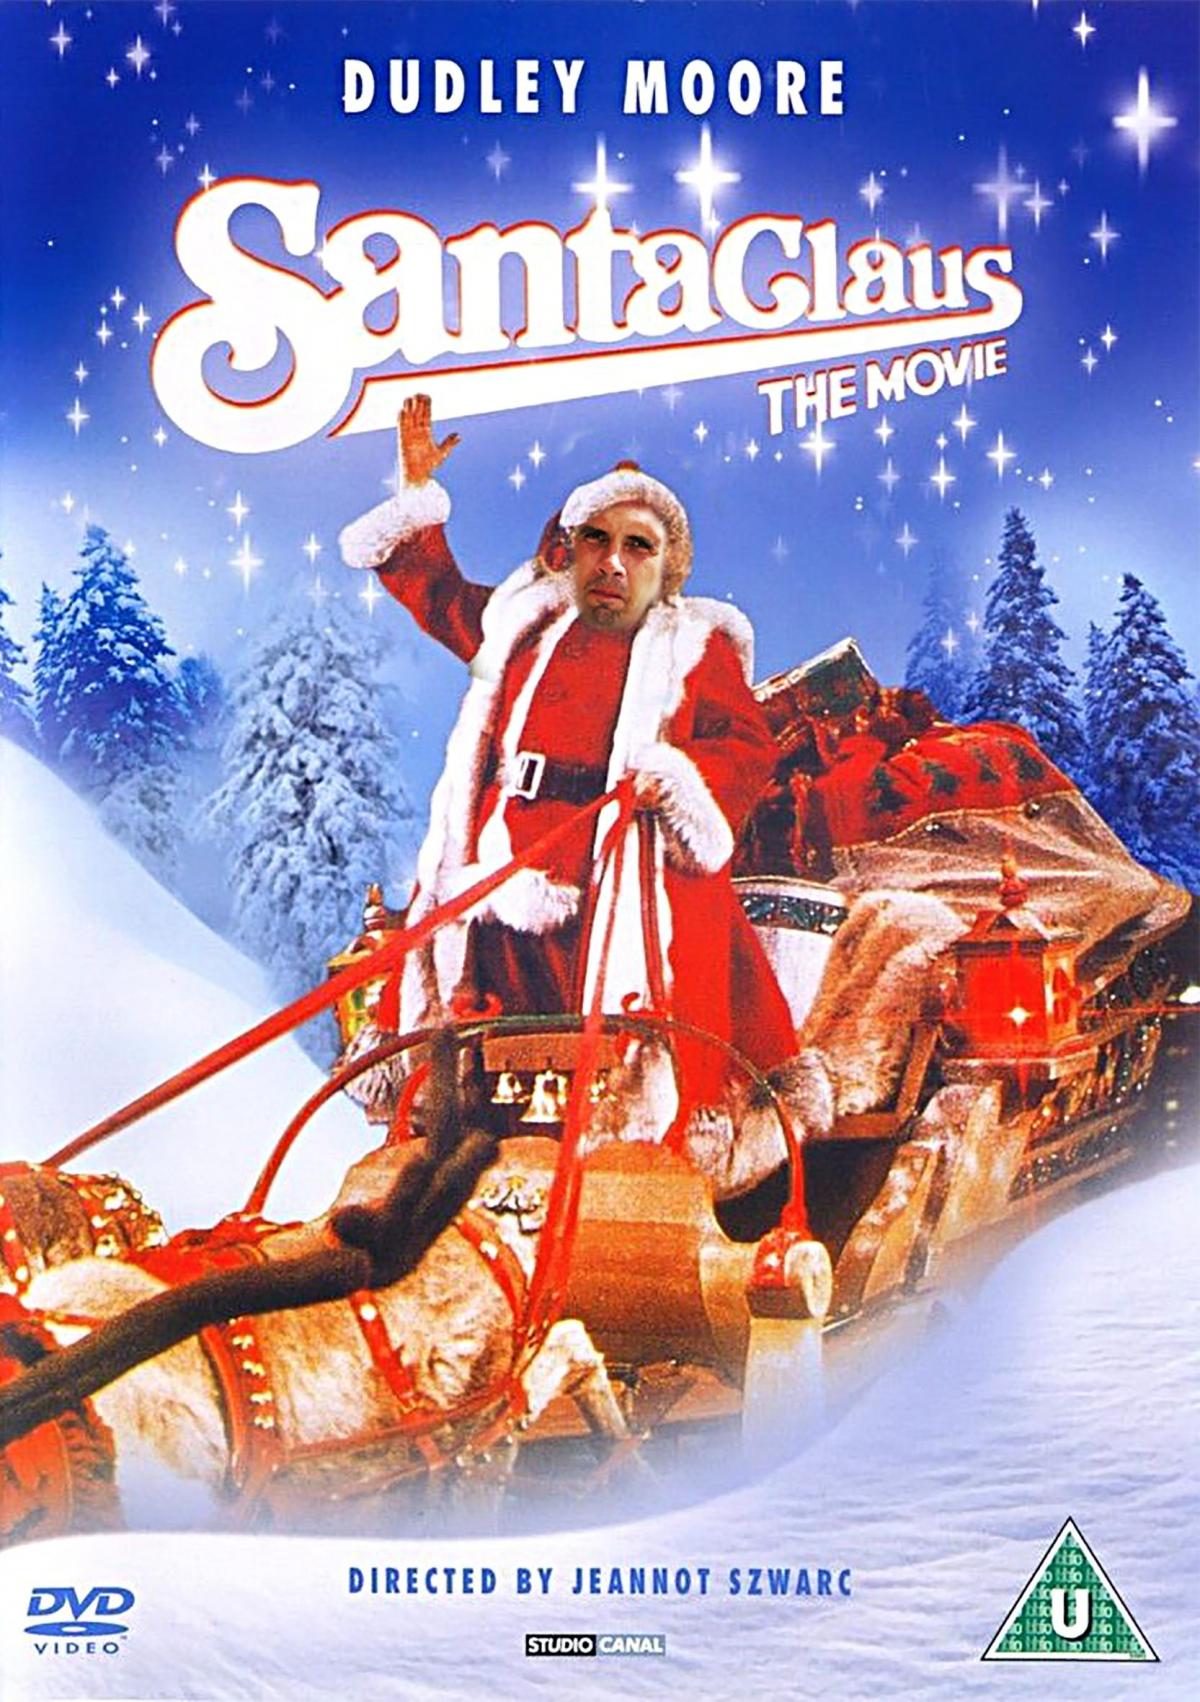 Claus Lundekvam - Santa Claus The Movie